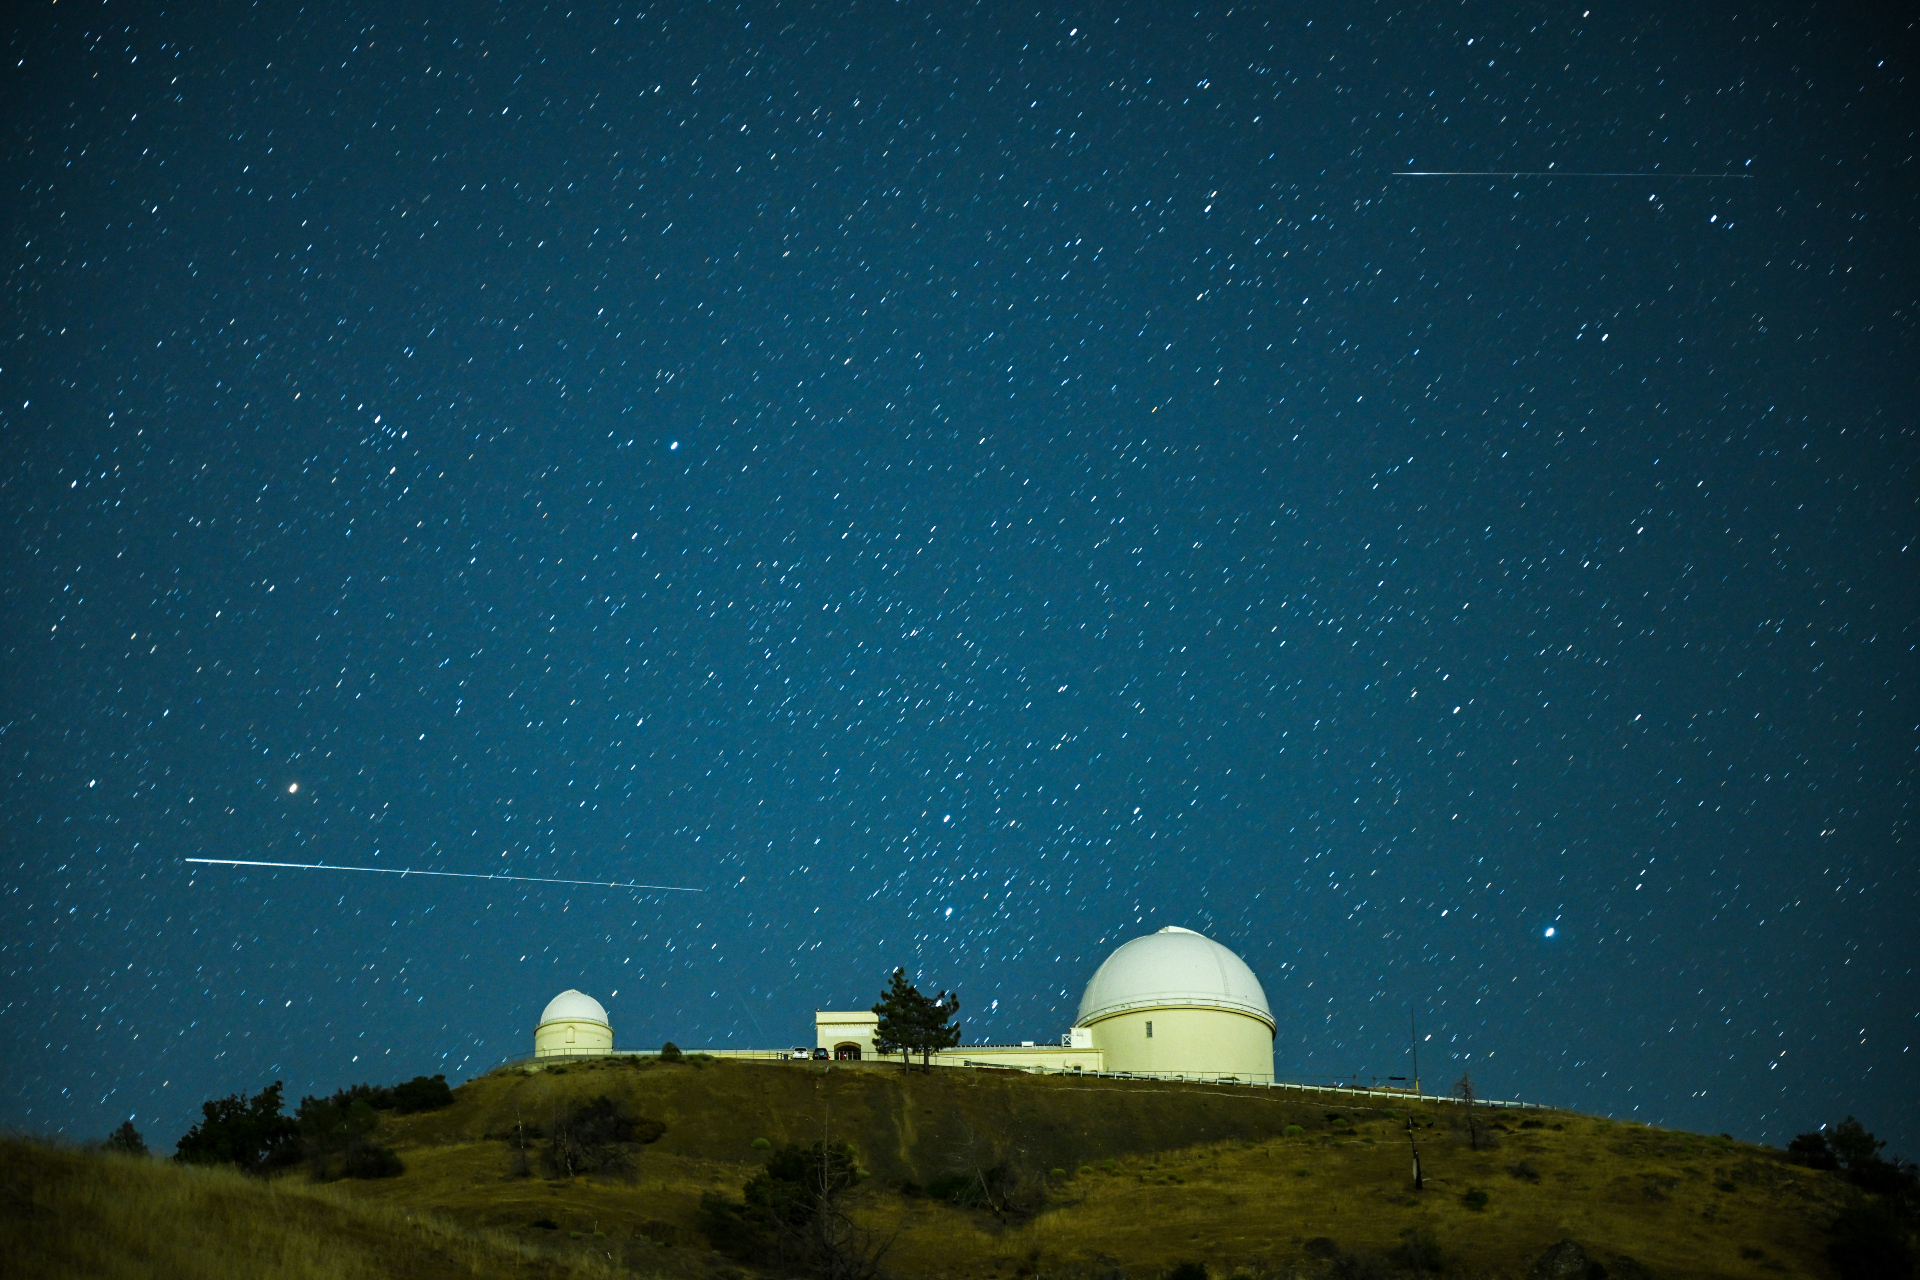 Uzun beyaz bir Perseid meteor dizisi, Göl Gözlemevi'nin kubbeli yapısının üzerinden yıldızlı bir gökyüzüne karşı yatay yönde geçer.